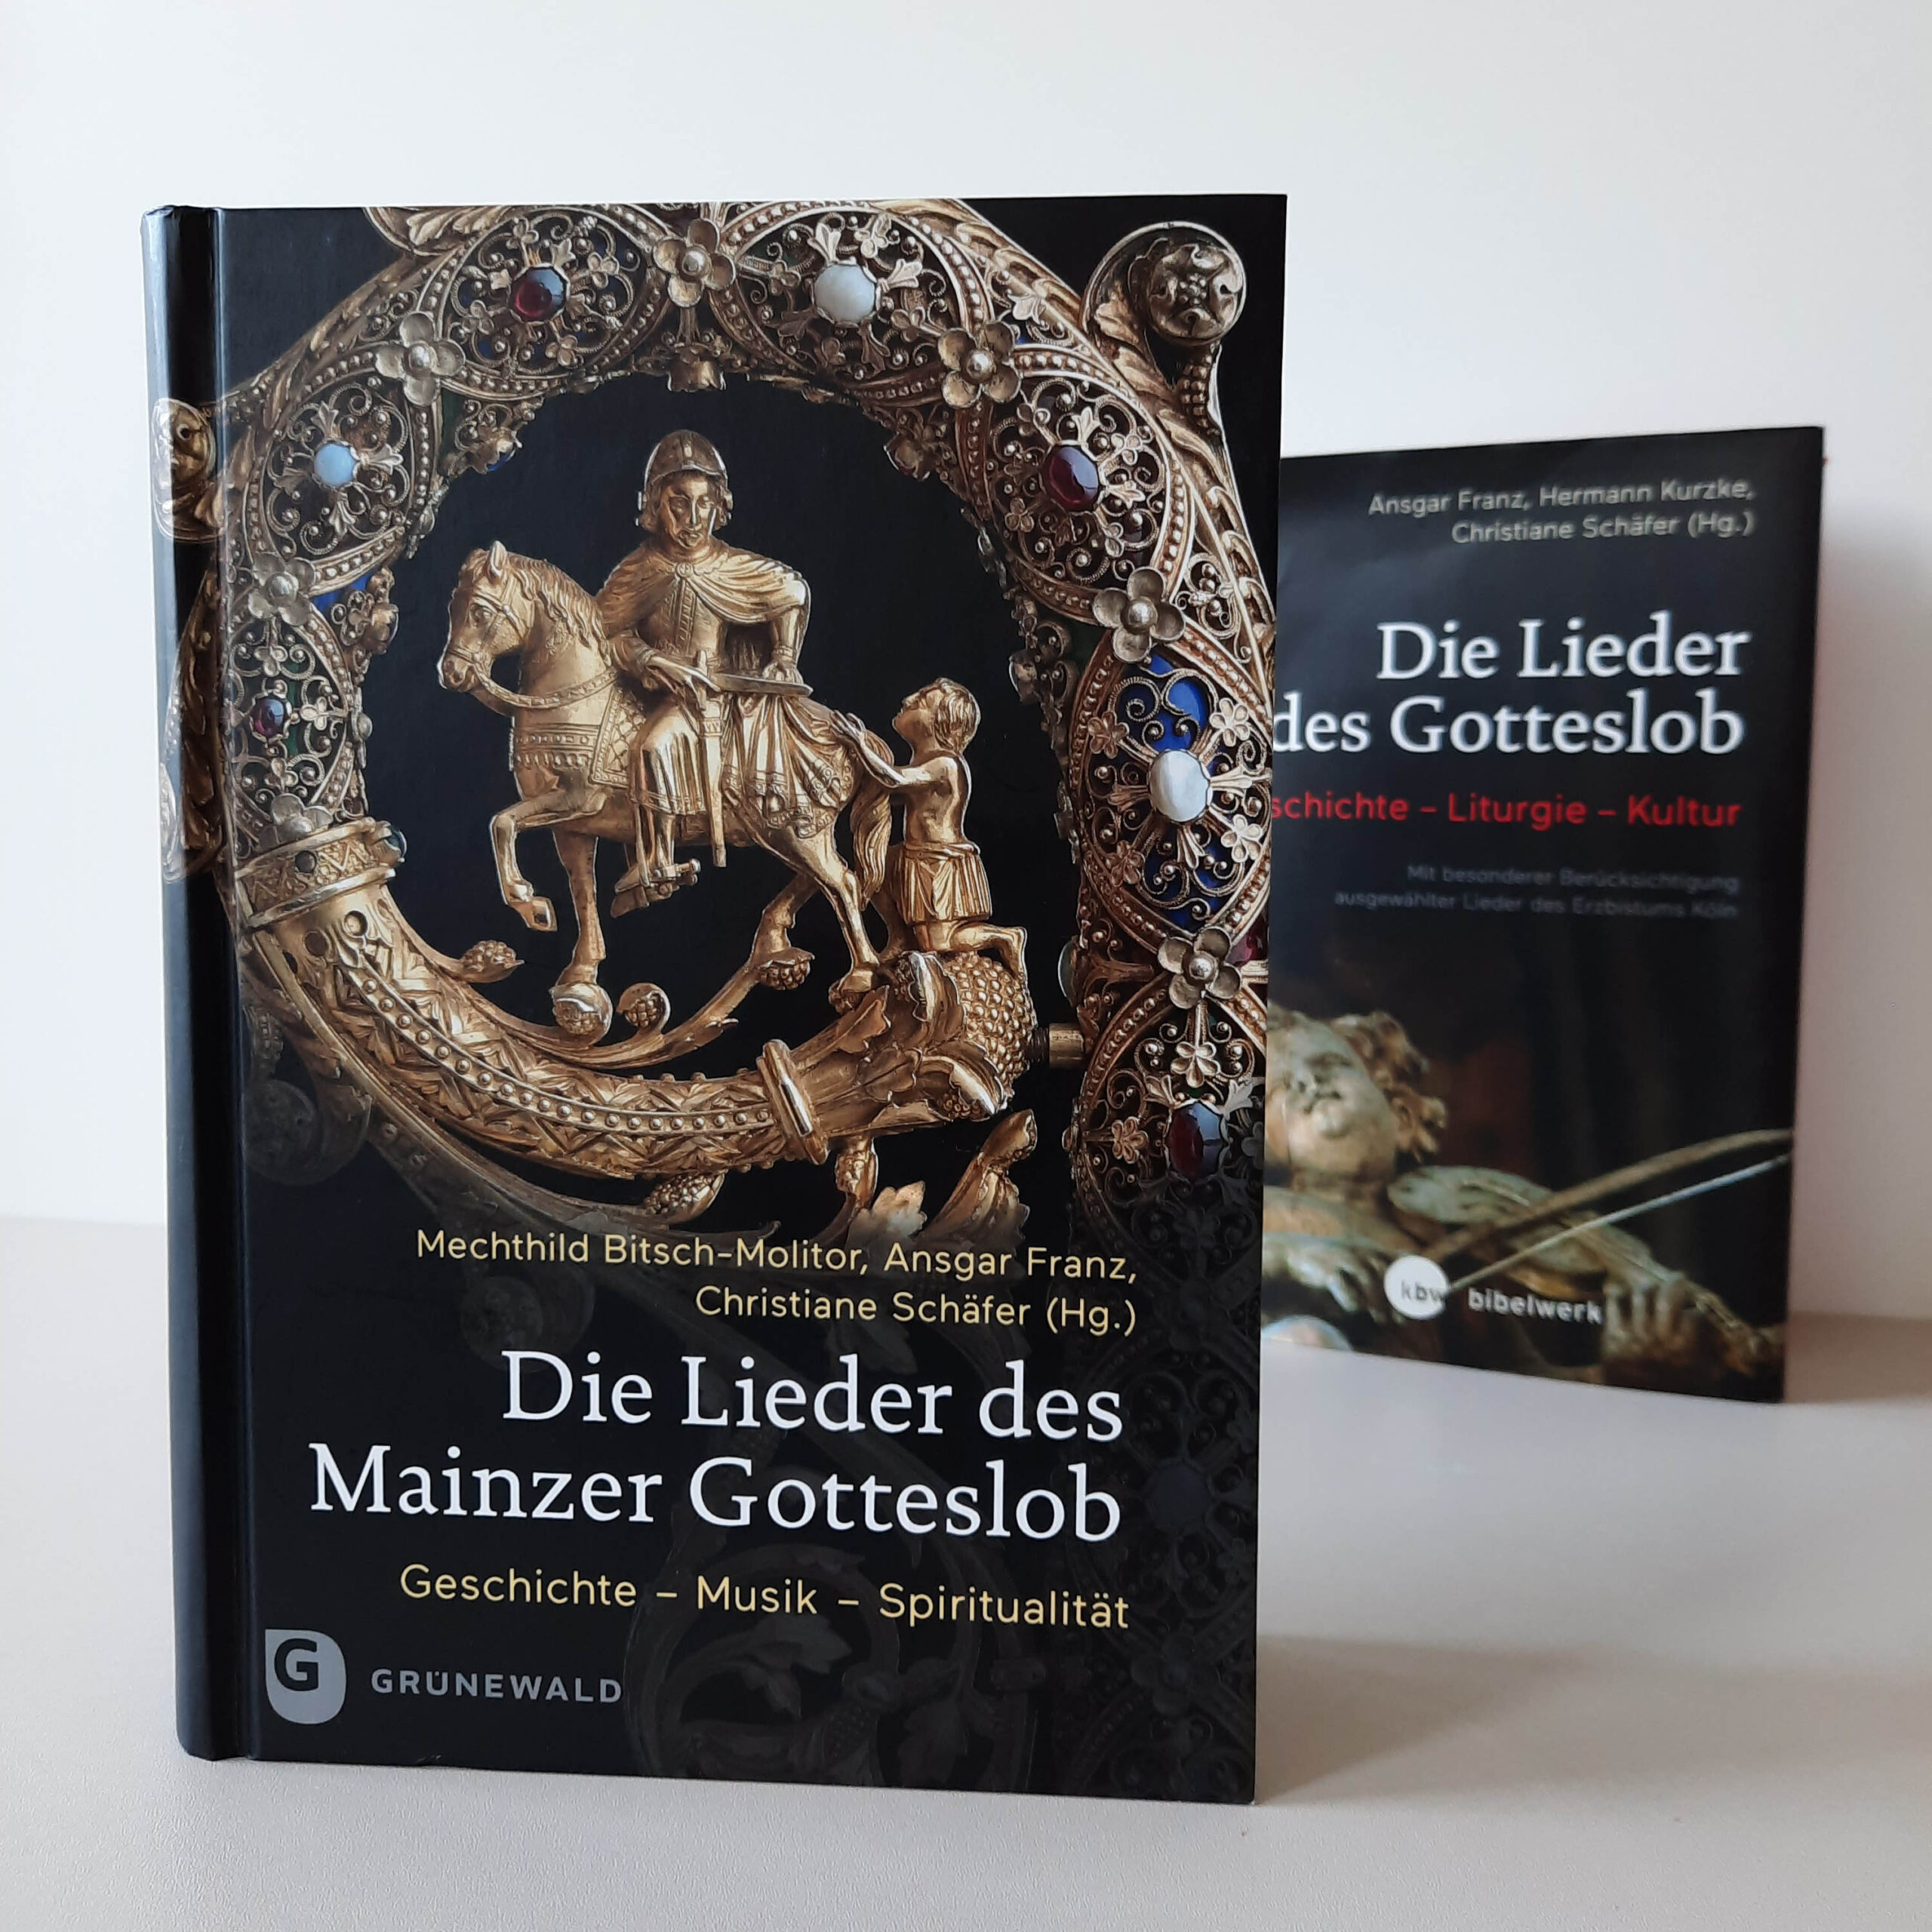 https://www.liturgie.kath.theologie.uni-mainz.de/files/2022/09/Die_Lieder_des_Mainzer_Gotteslob-scaled.jpg